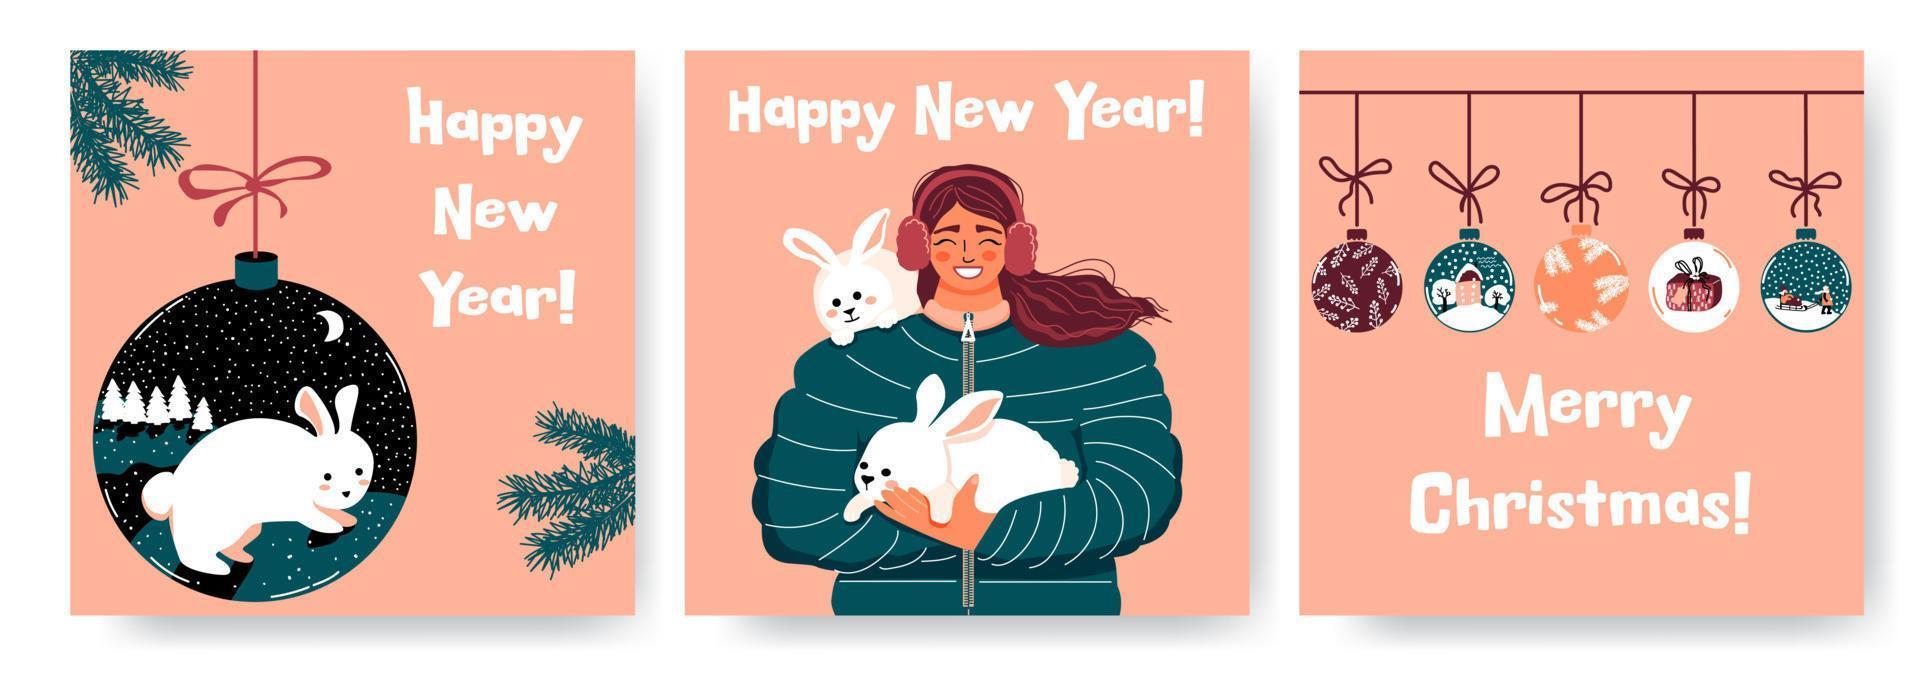 Feliz año nuevo. liebre, conejito -símbolo del año nuevo chino 2023. mujer sosteniendo un conejo. bolas de navidad con conejo, nevadas. tarjetas de felicitación vectoriales. vector